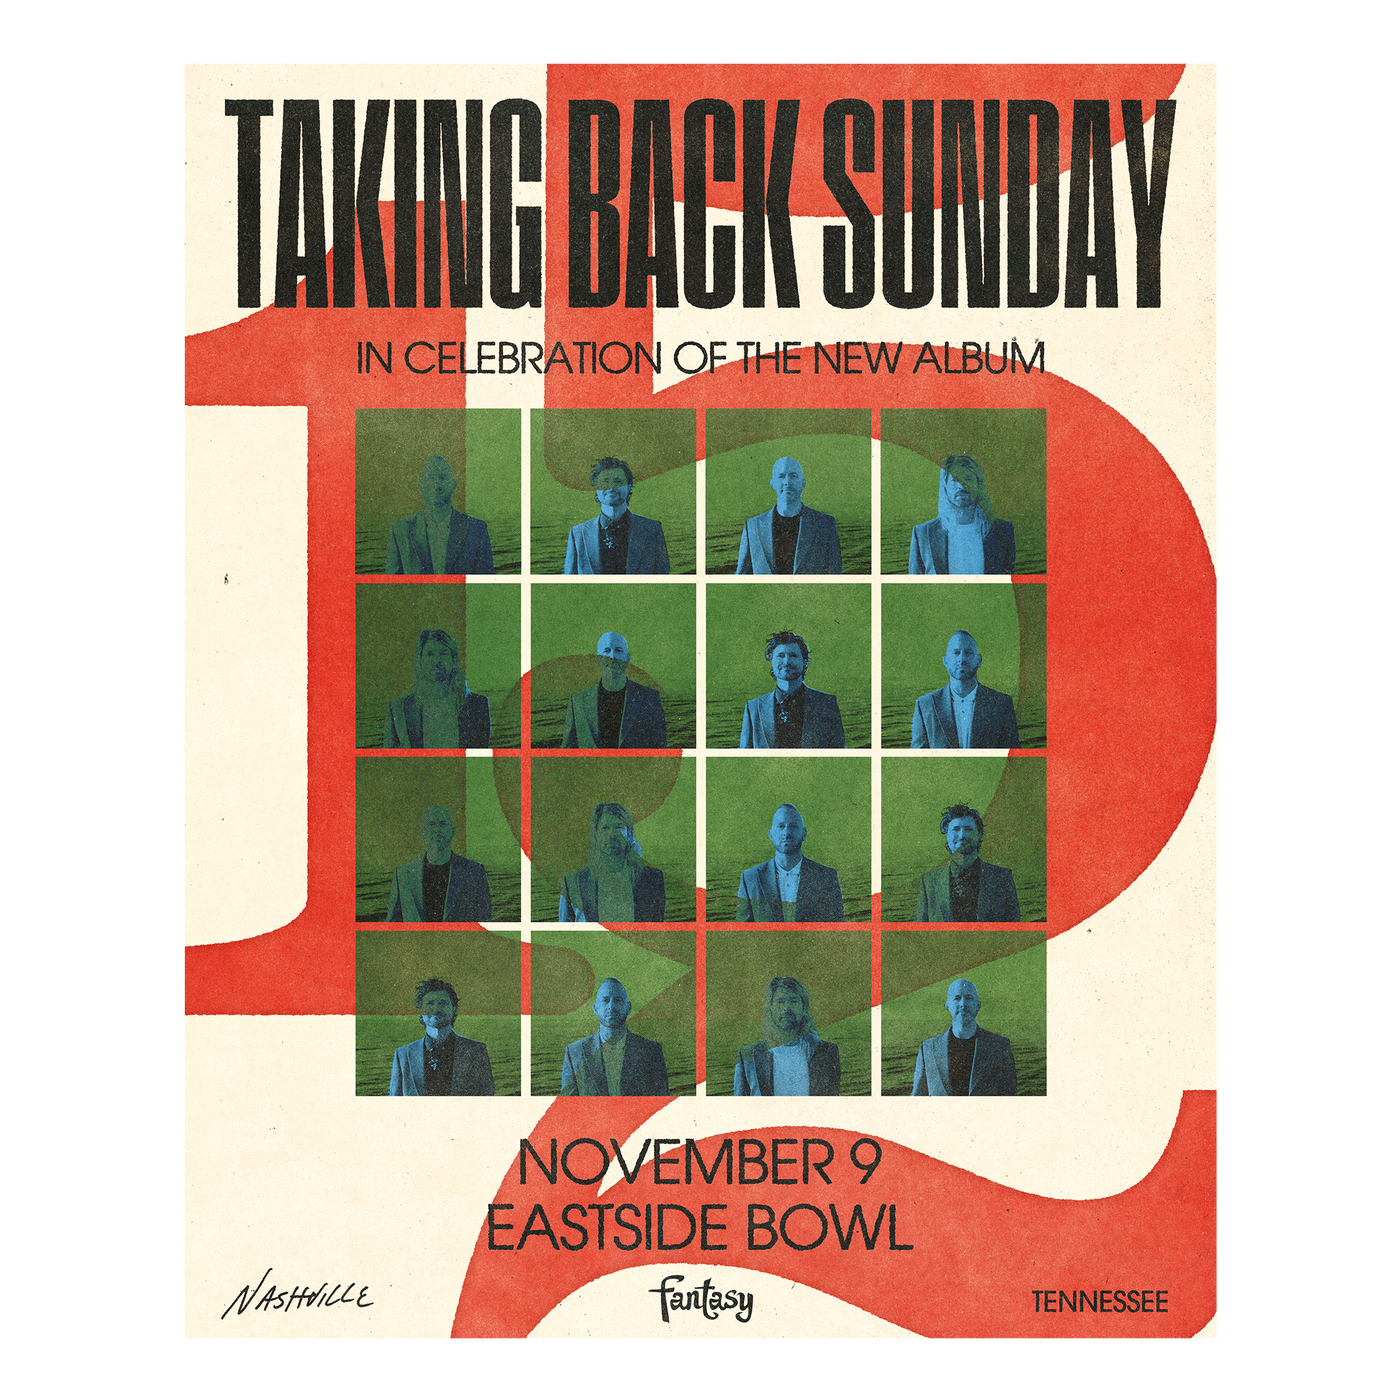 Taking Back Sunday - 152 (Eastside Bowl, Nashville November 9th) Poster